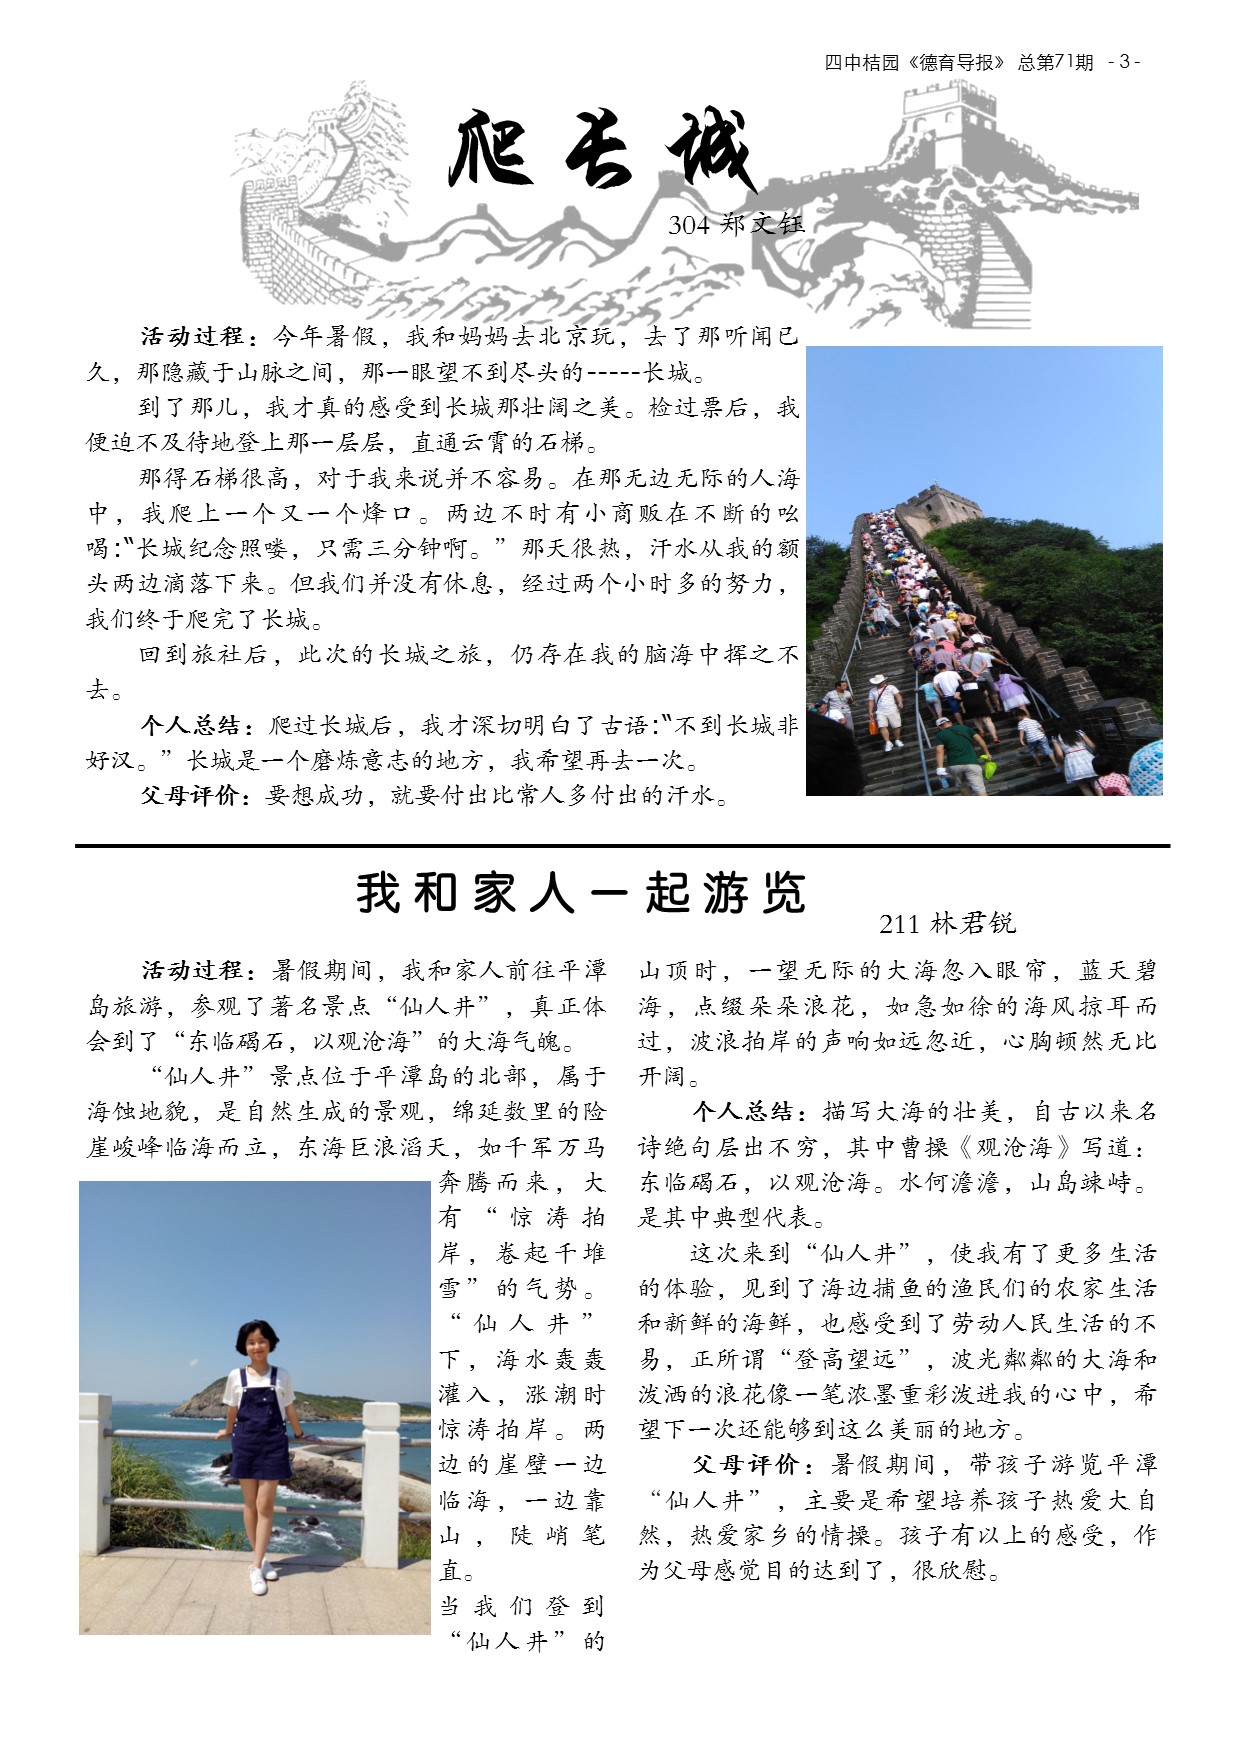 德育导报 NO.71 第8卷，第1期 2016年开学德育作业特刊(3).jpg